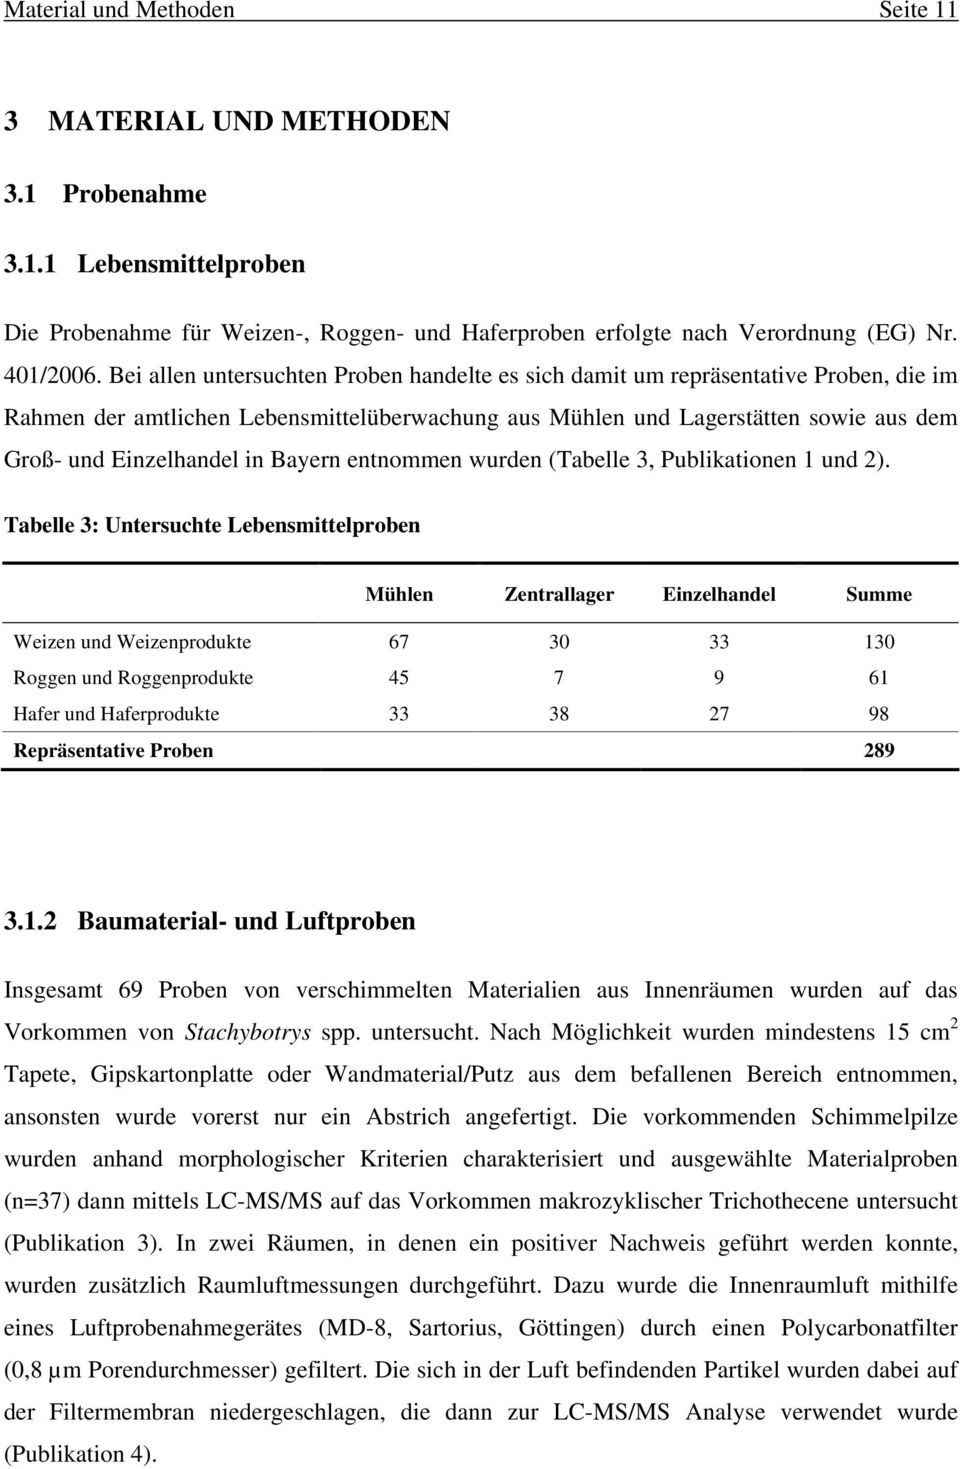 Bayern entnommen wurden (Tabelle 3, Publikationen 1 und 2).